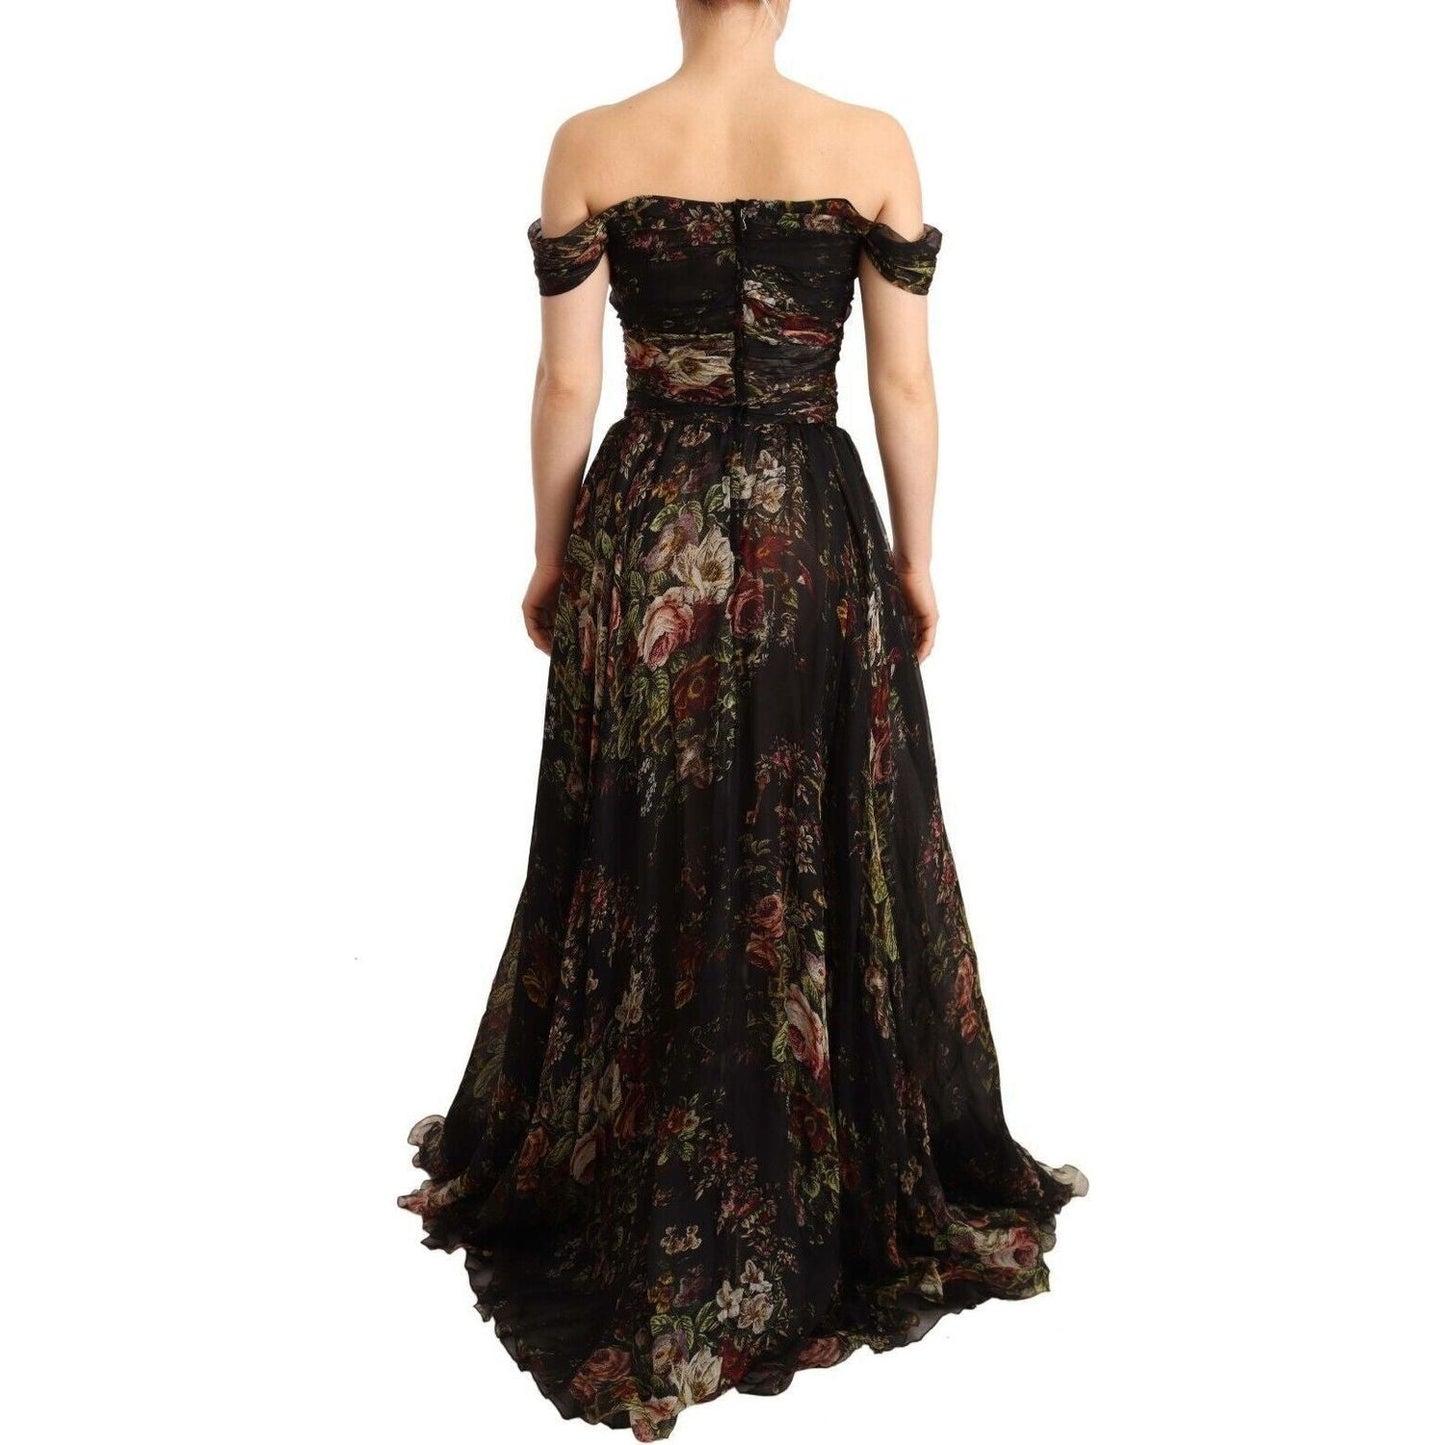 Dolce & Gabbana Floral Silk Off-Shoulder Long Dress multicolored-floral-off-shoulder-gown-dress s-l1600-3-40-3f780599-162.jpg